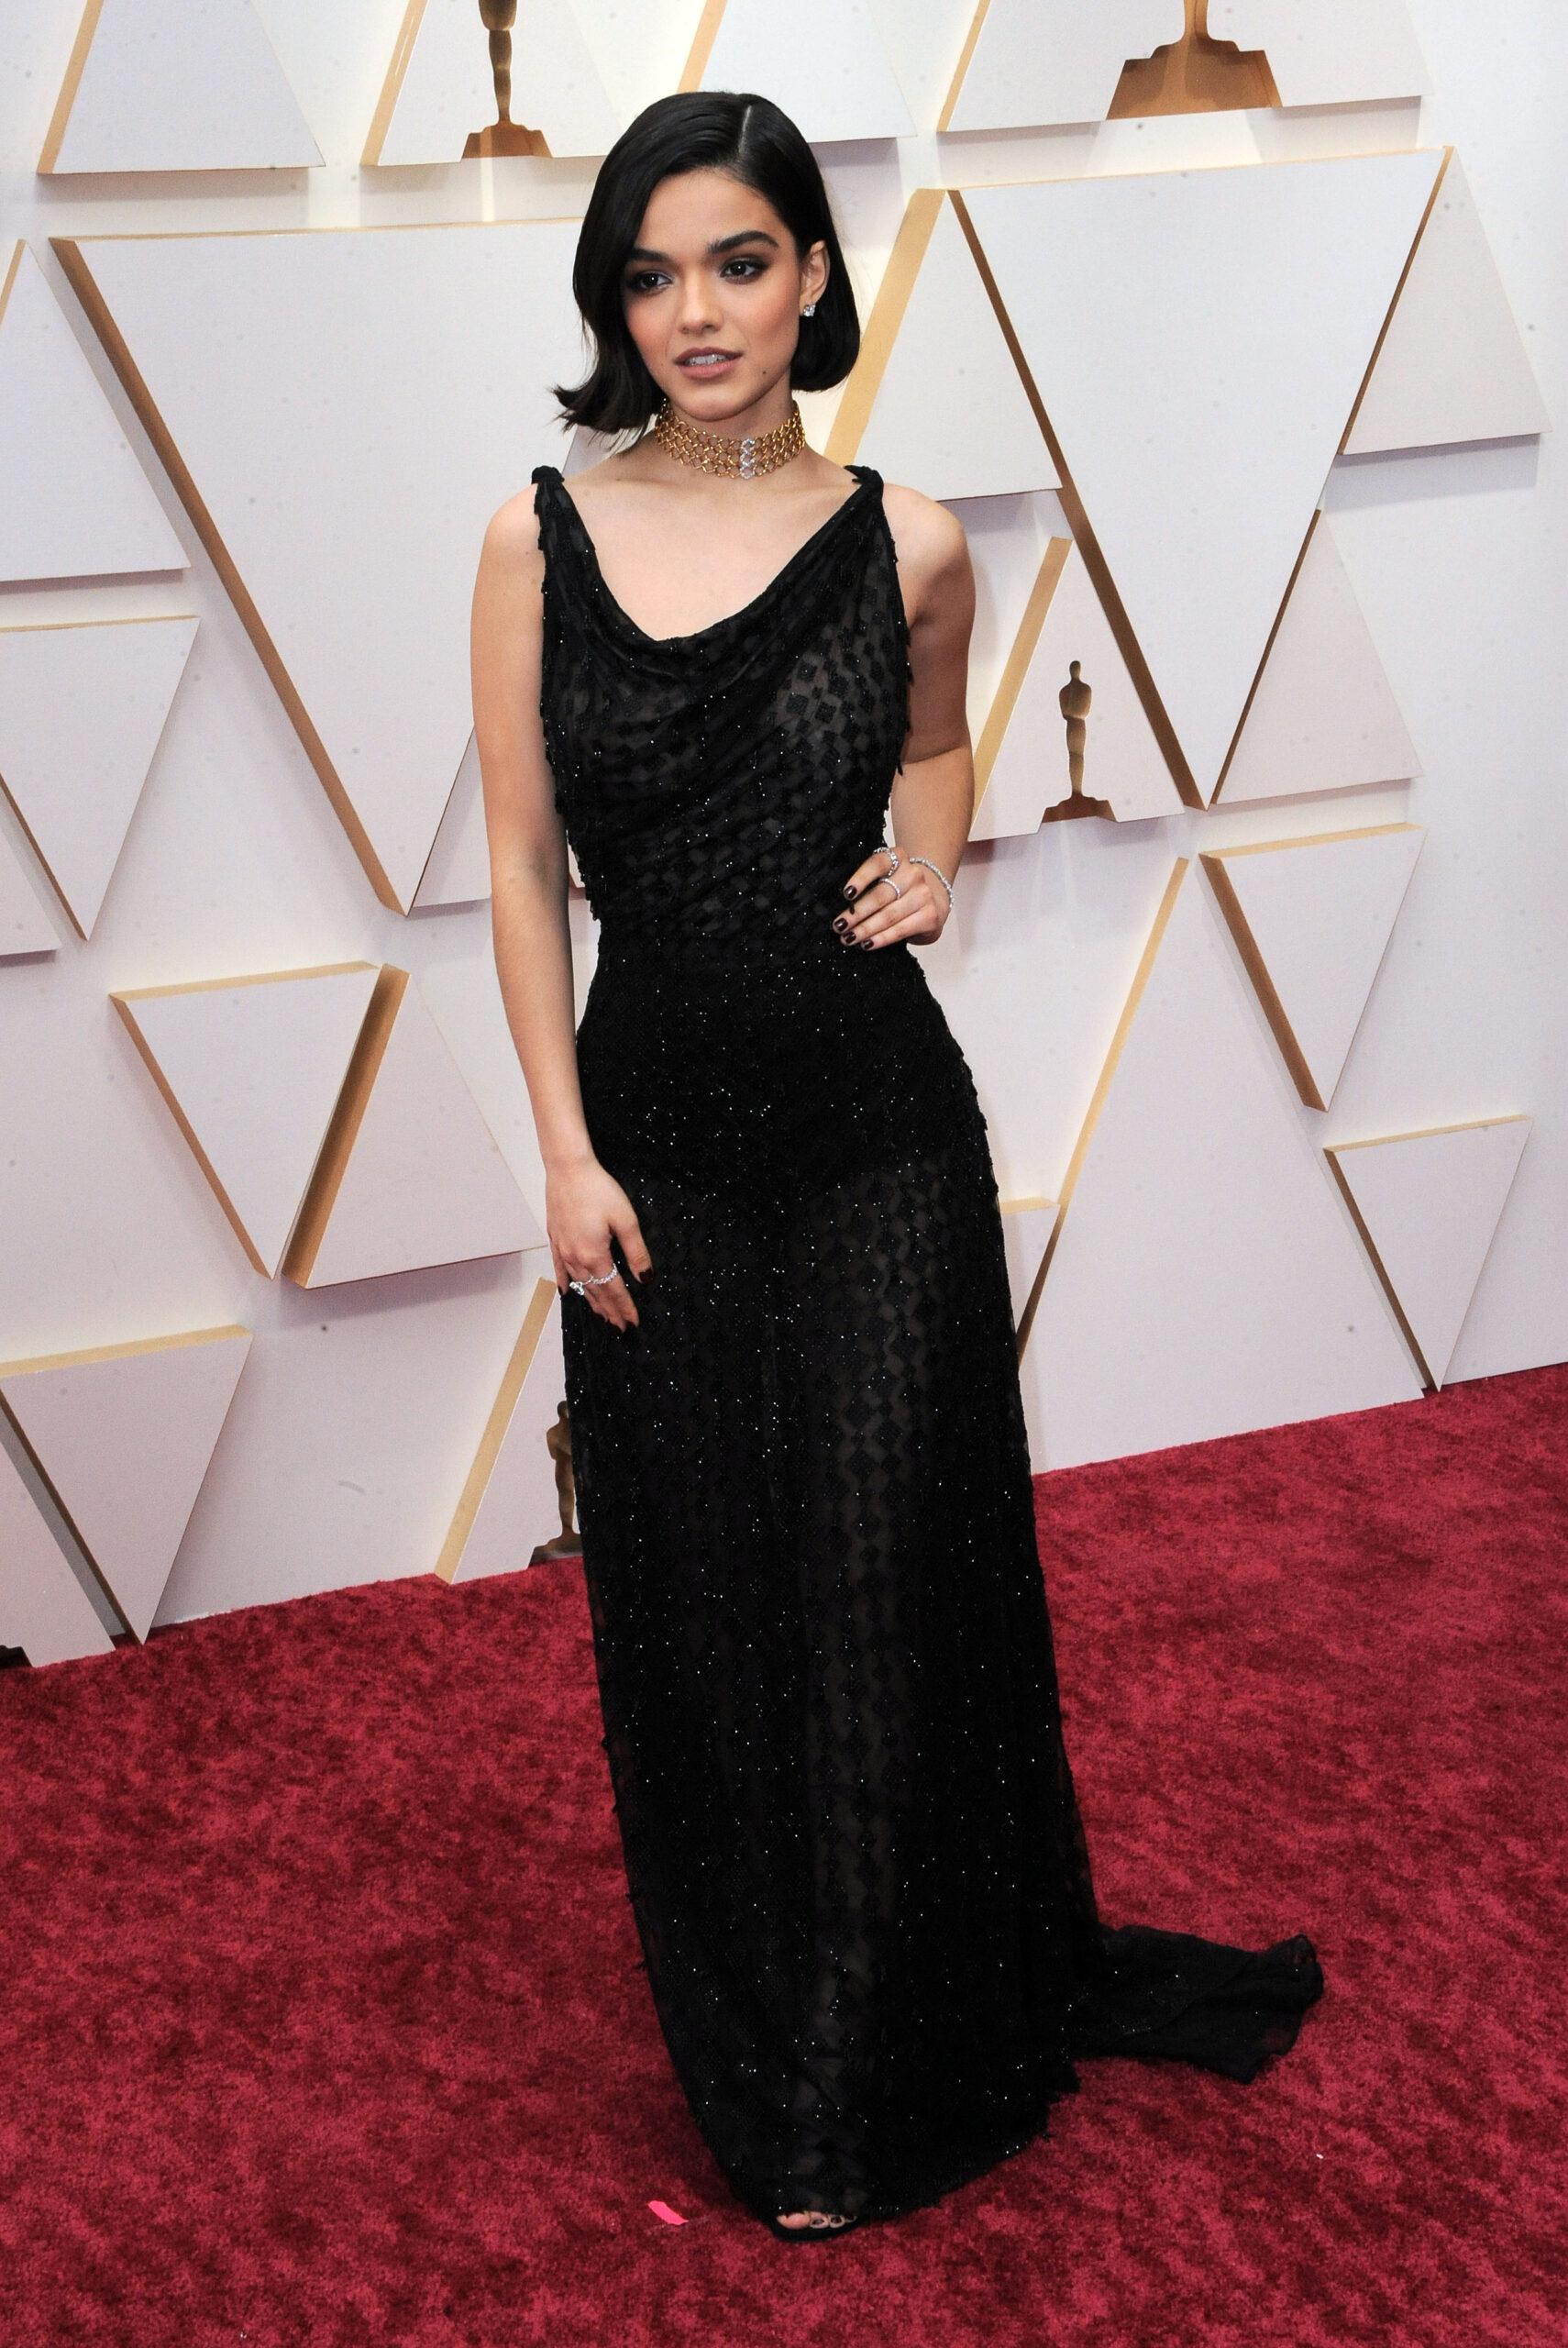 Rachel Zegler at the 94th Annual Academy Awards Oscars ceremony